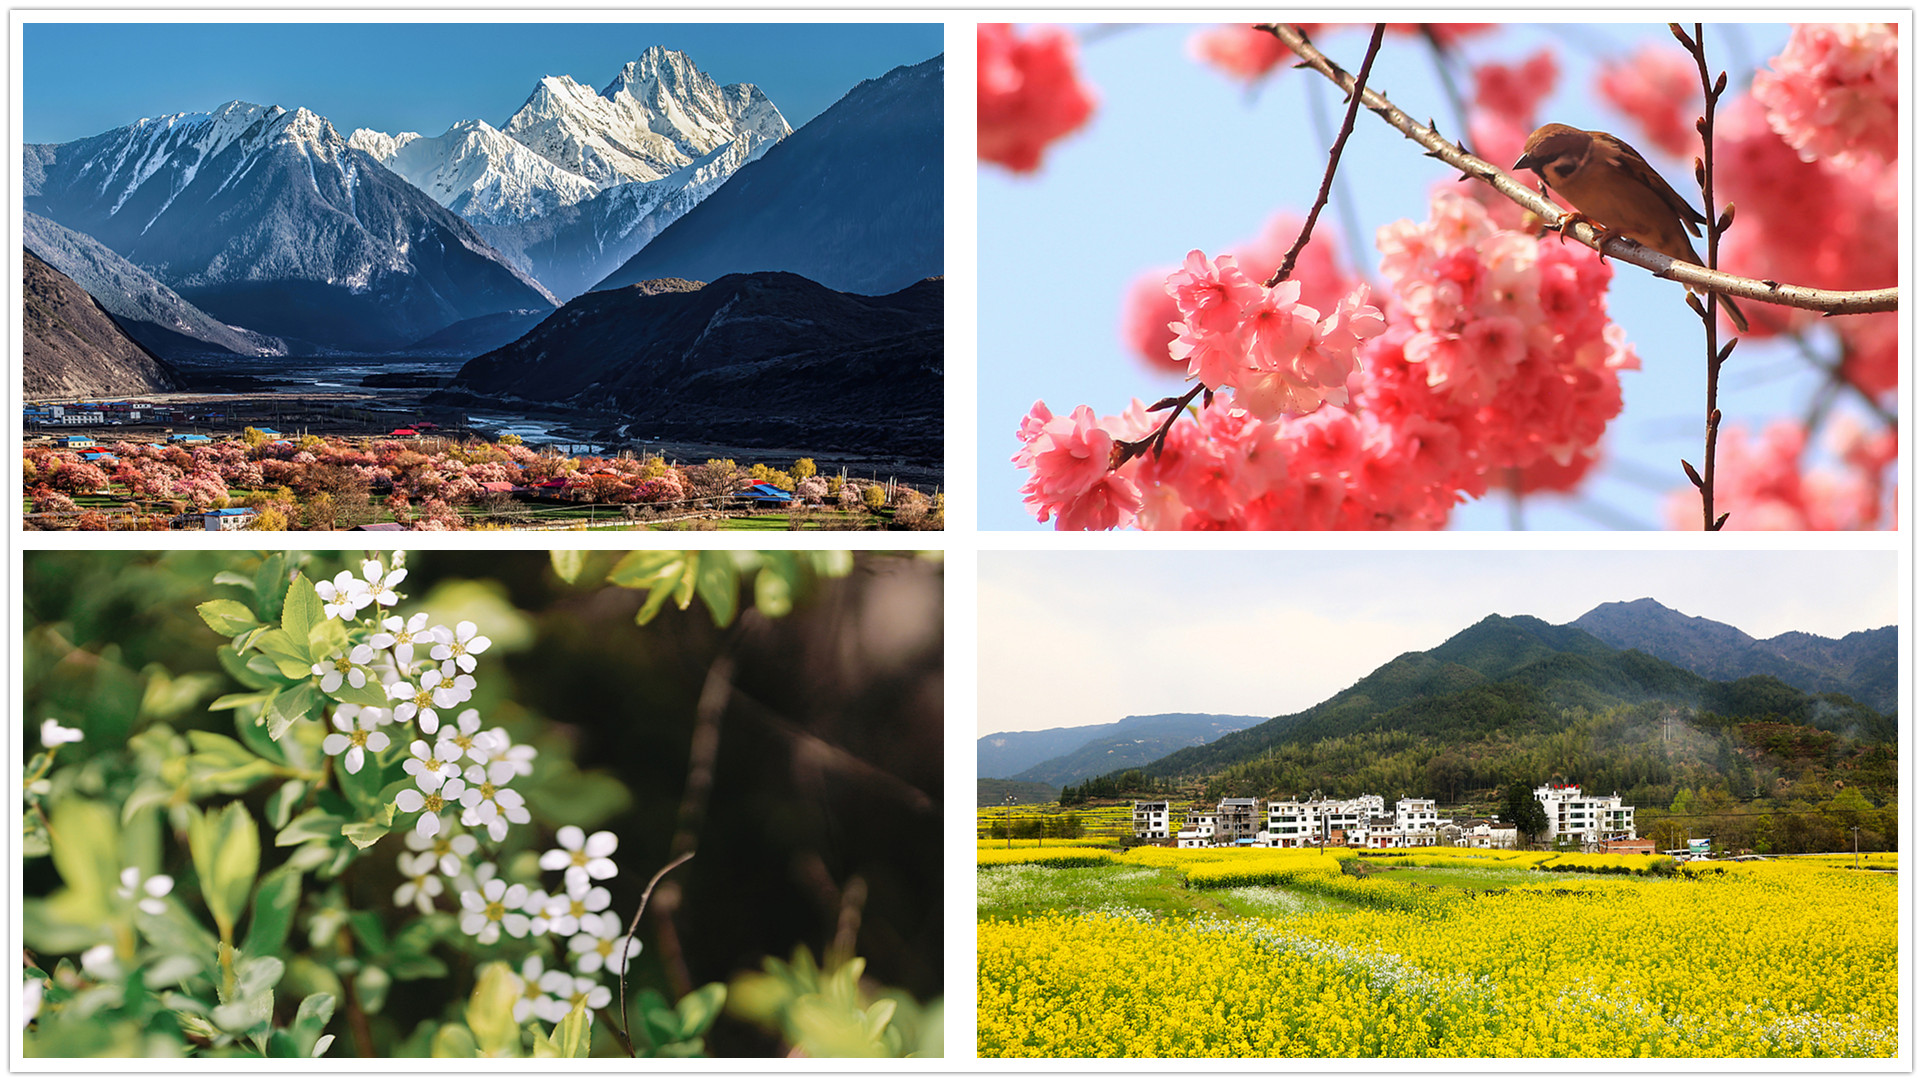 《春暖花开的中国》开播 绘就美丽中国春景图(图1)